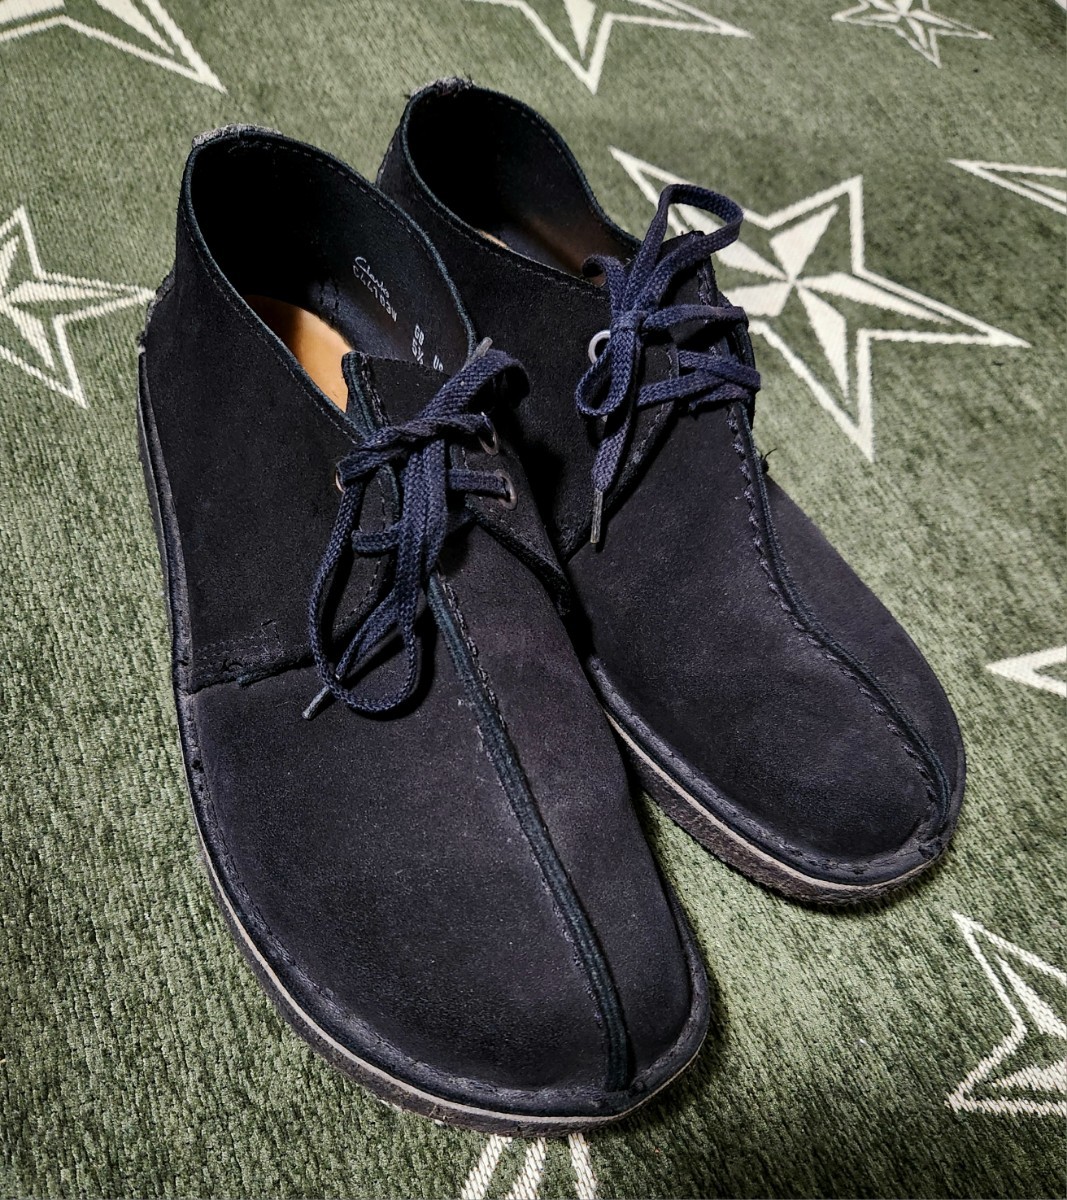  бесплатная доставка Clarks Clarks черный wala Be обувь чёрный замша обувь Desert desert boots 7.5 дюймовый 25cm?